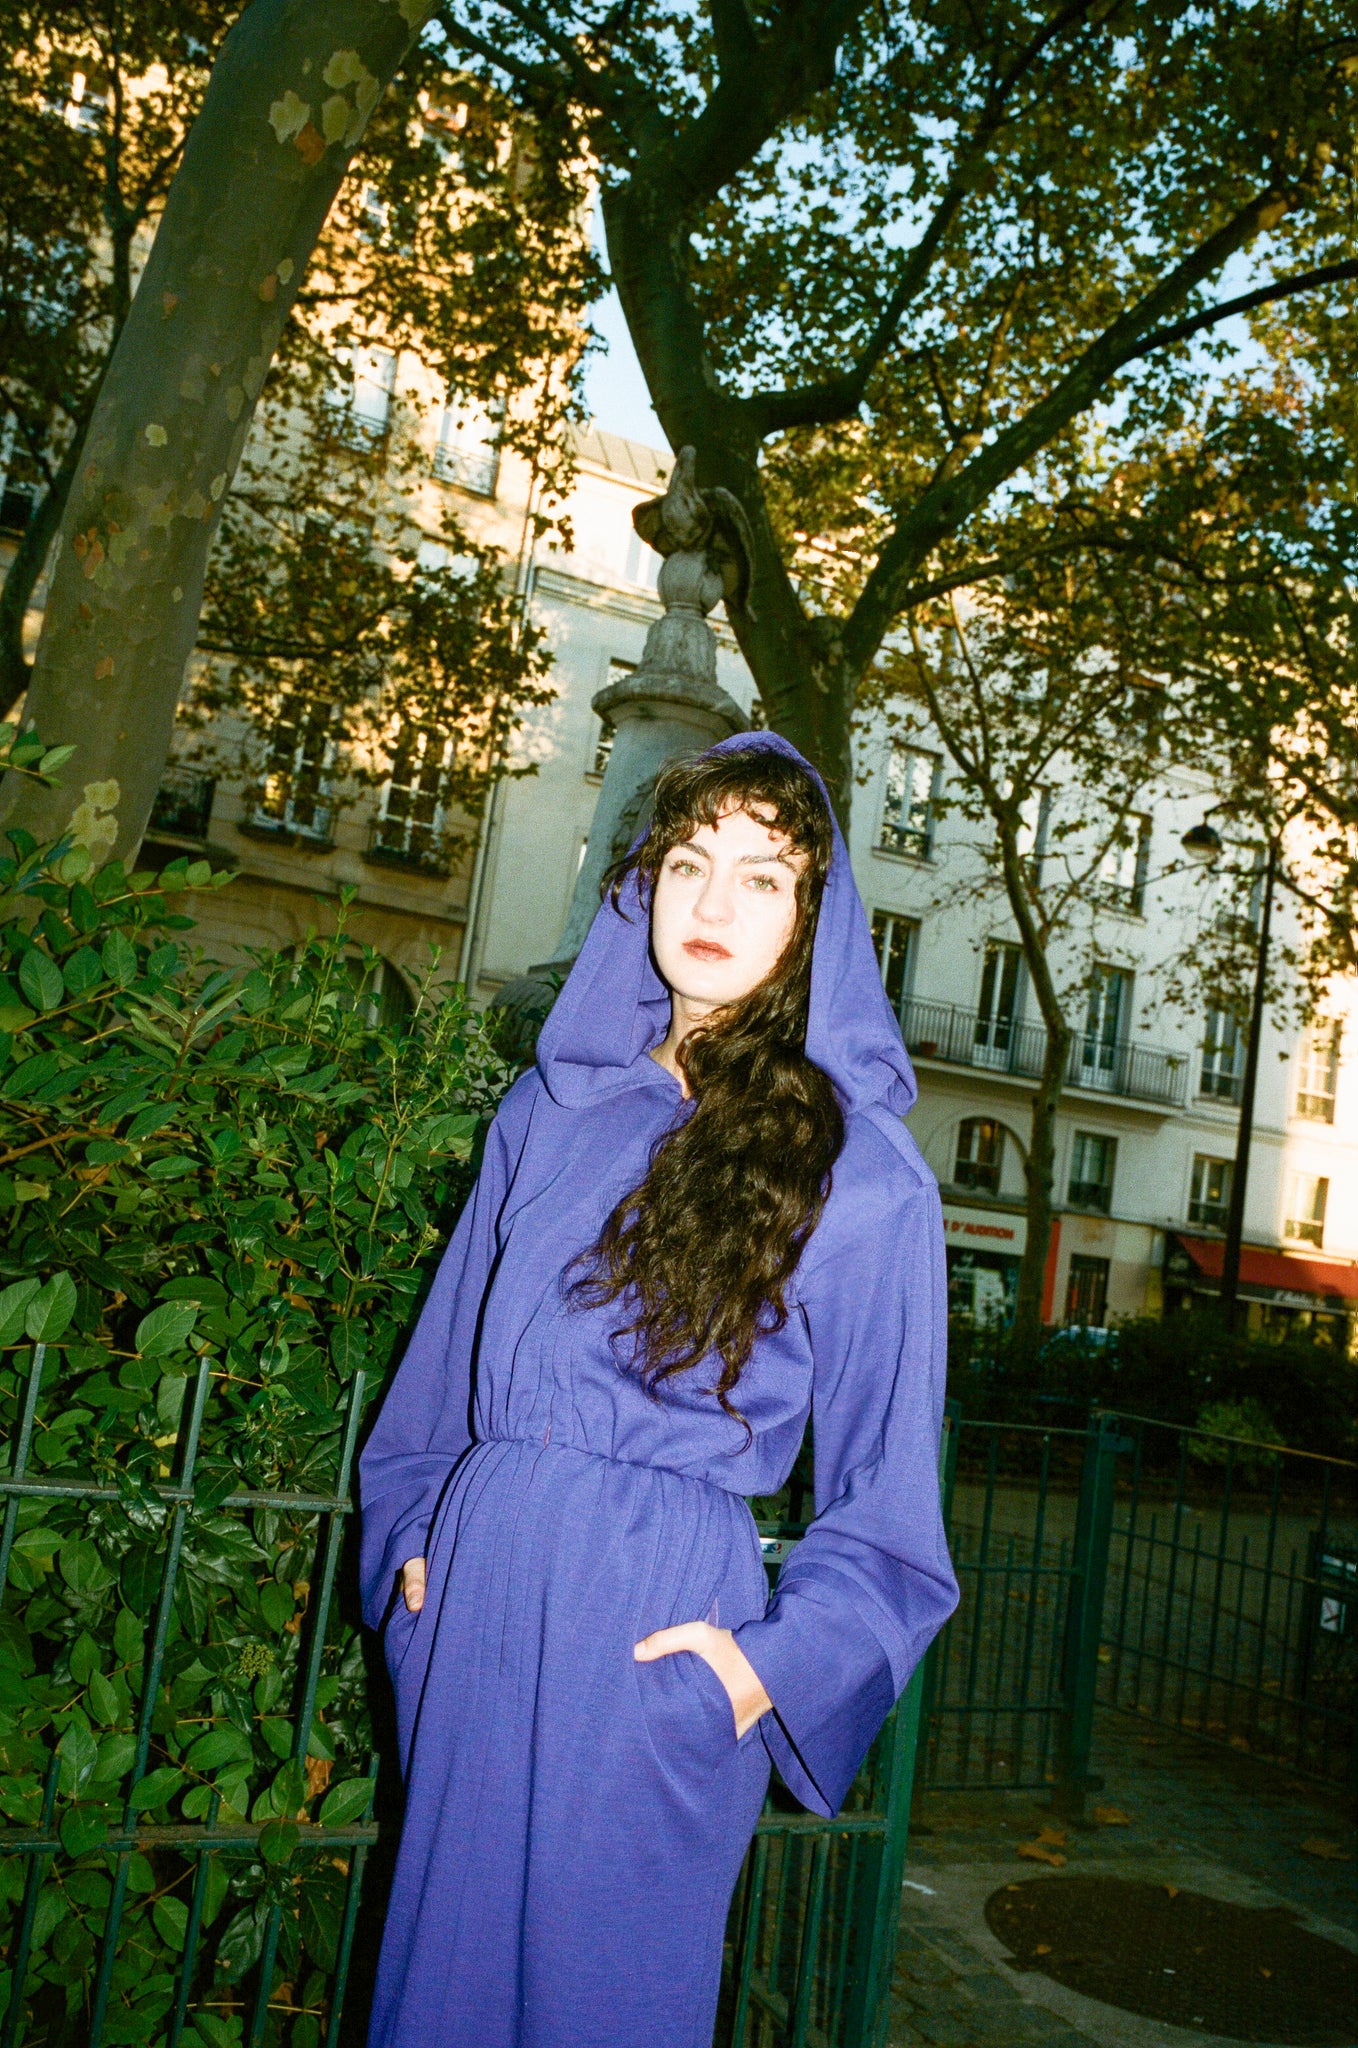 AW 1985/86 Yves Saint Laurent hooded dress – Souvenir Vintage